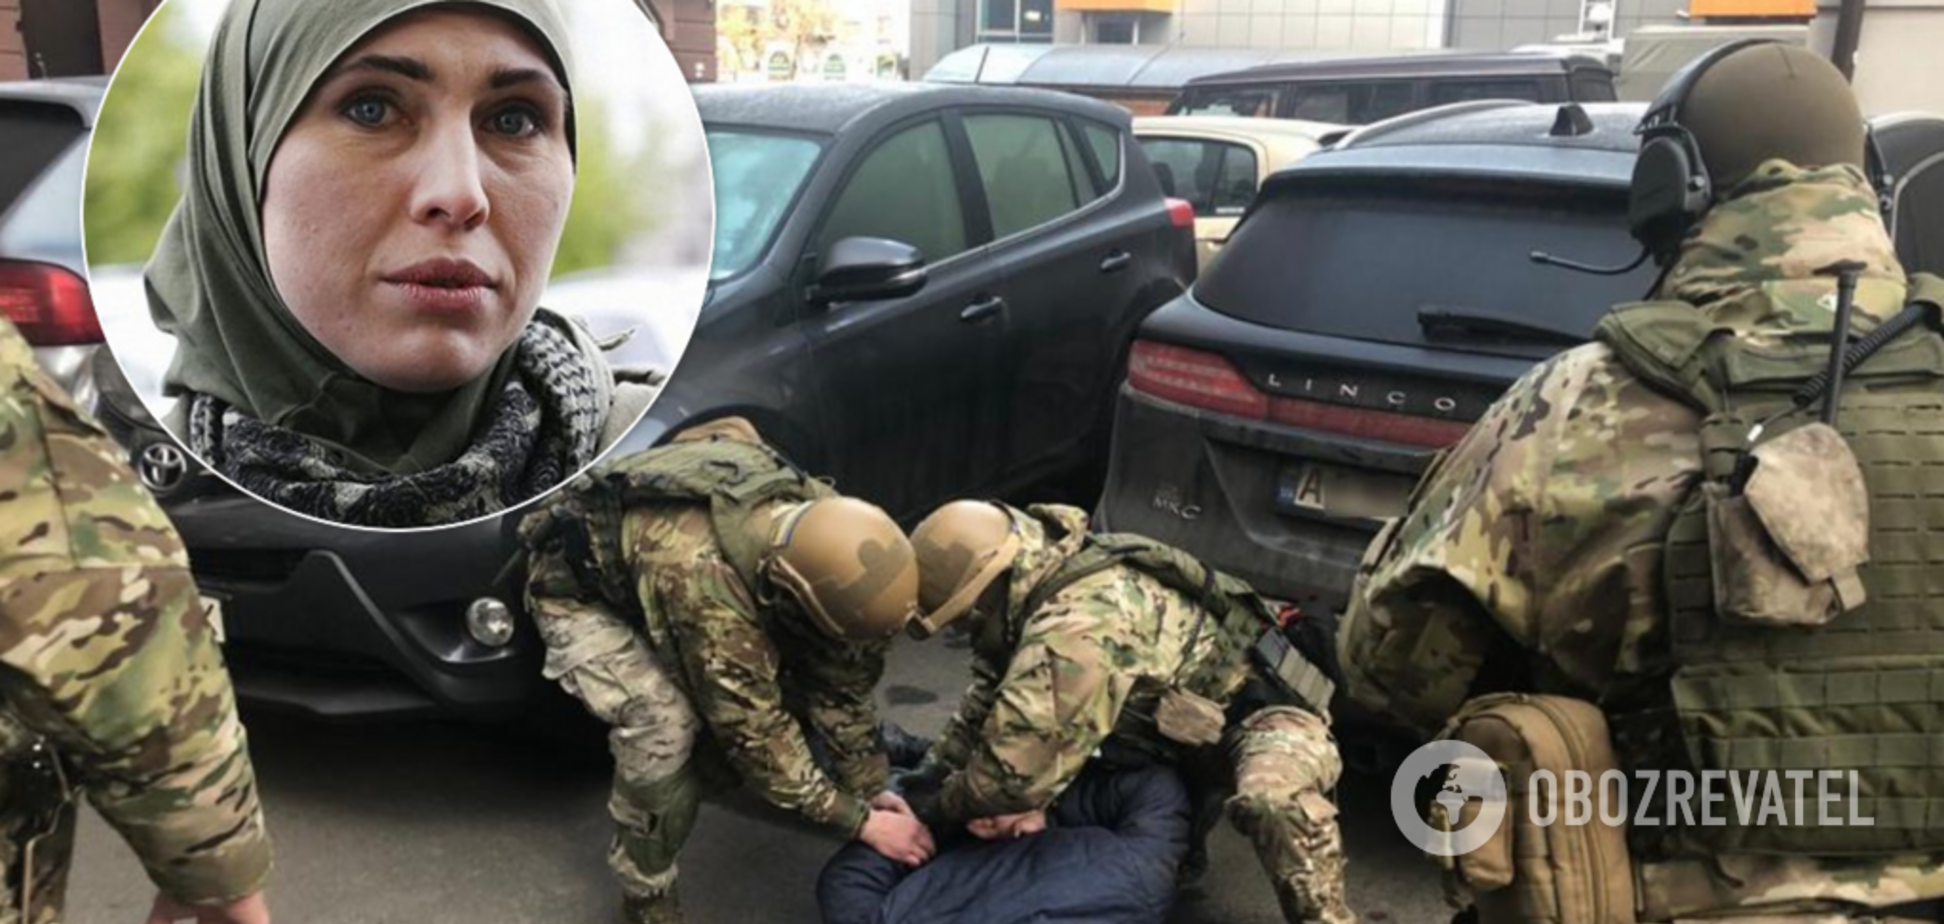 Уроженец России и след 'ЛНР': полиция раскрыла громкие подробности по убийству Окуевой